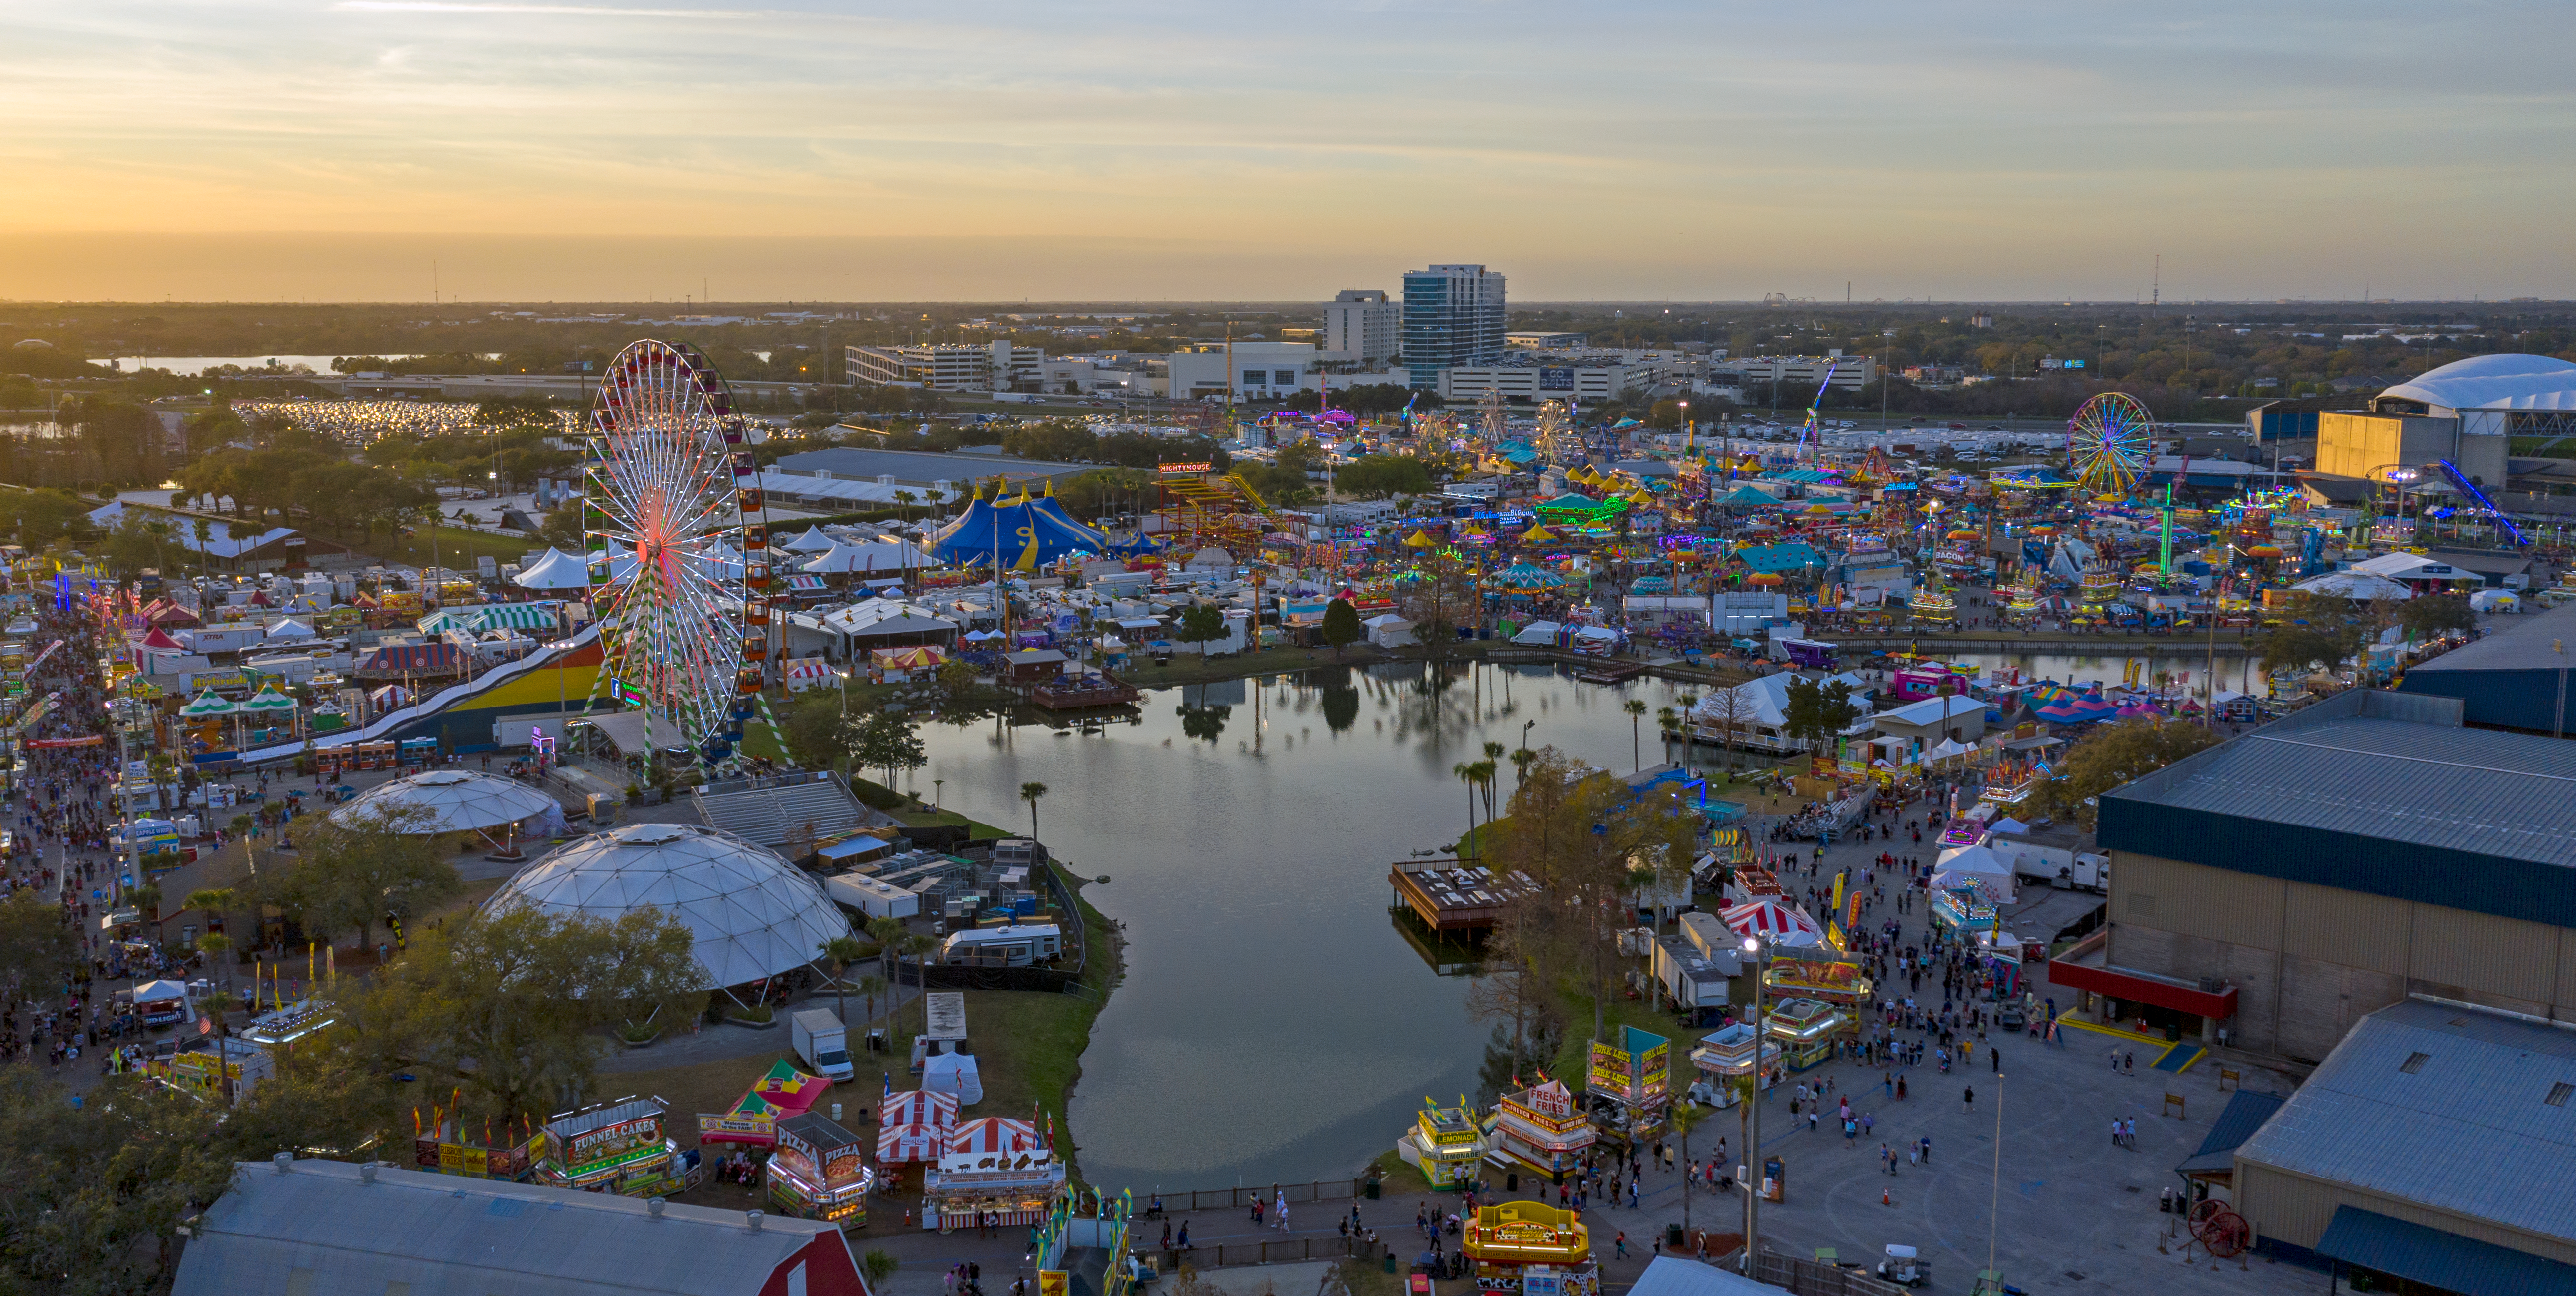 Florida State Fairgrounds